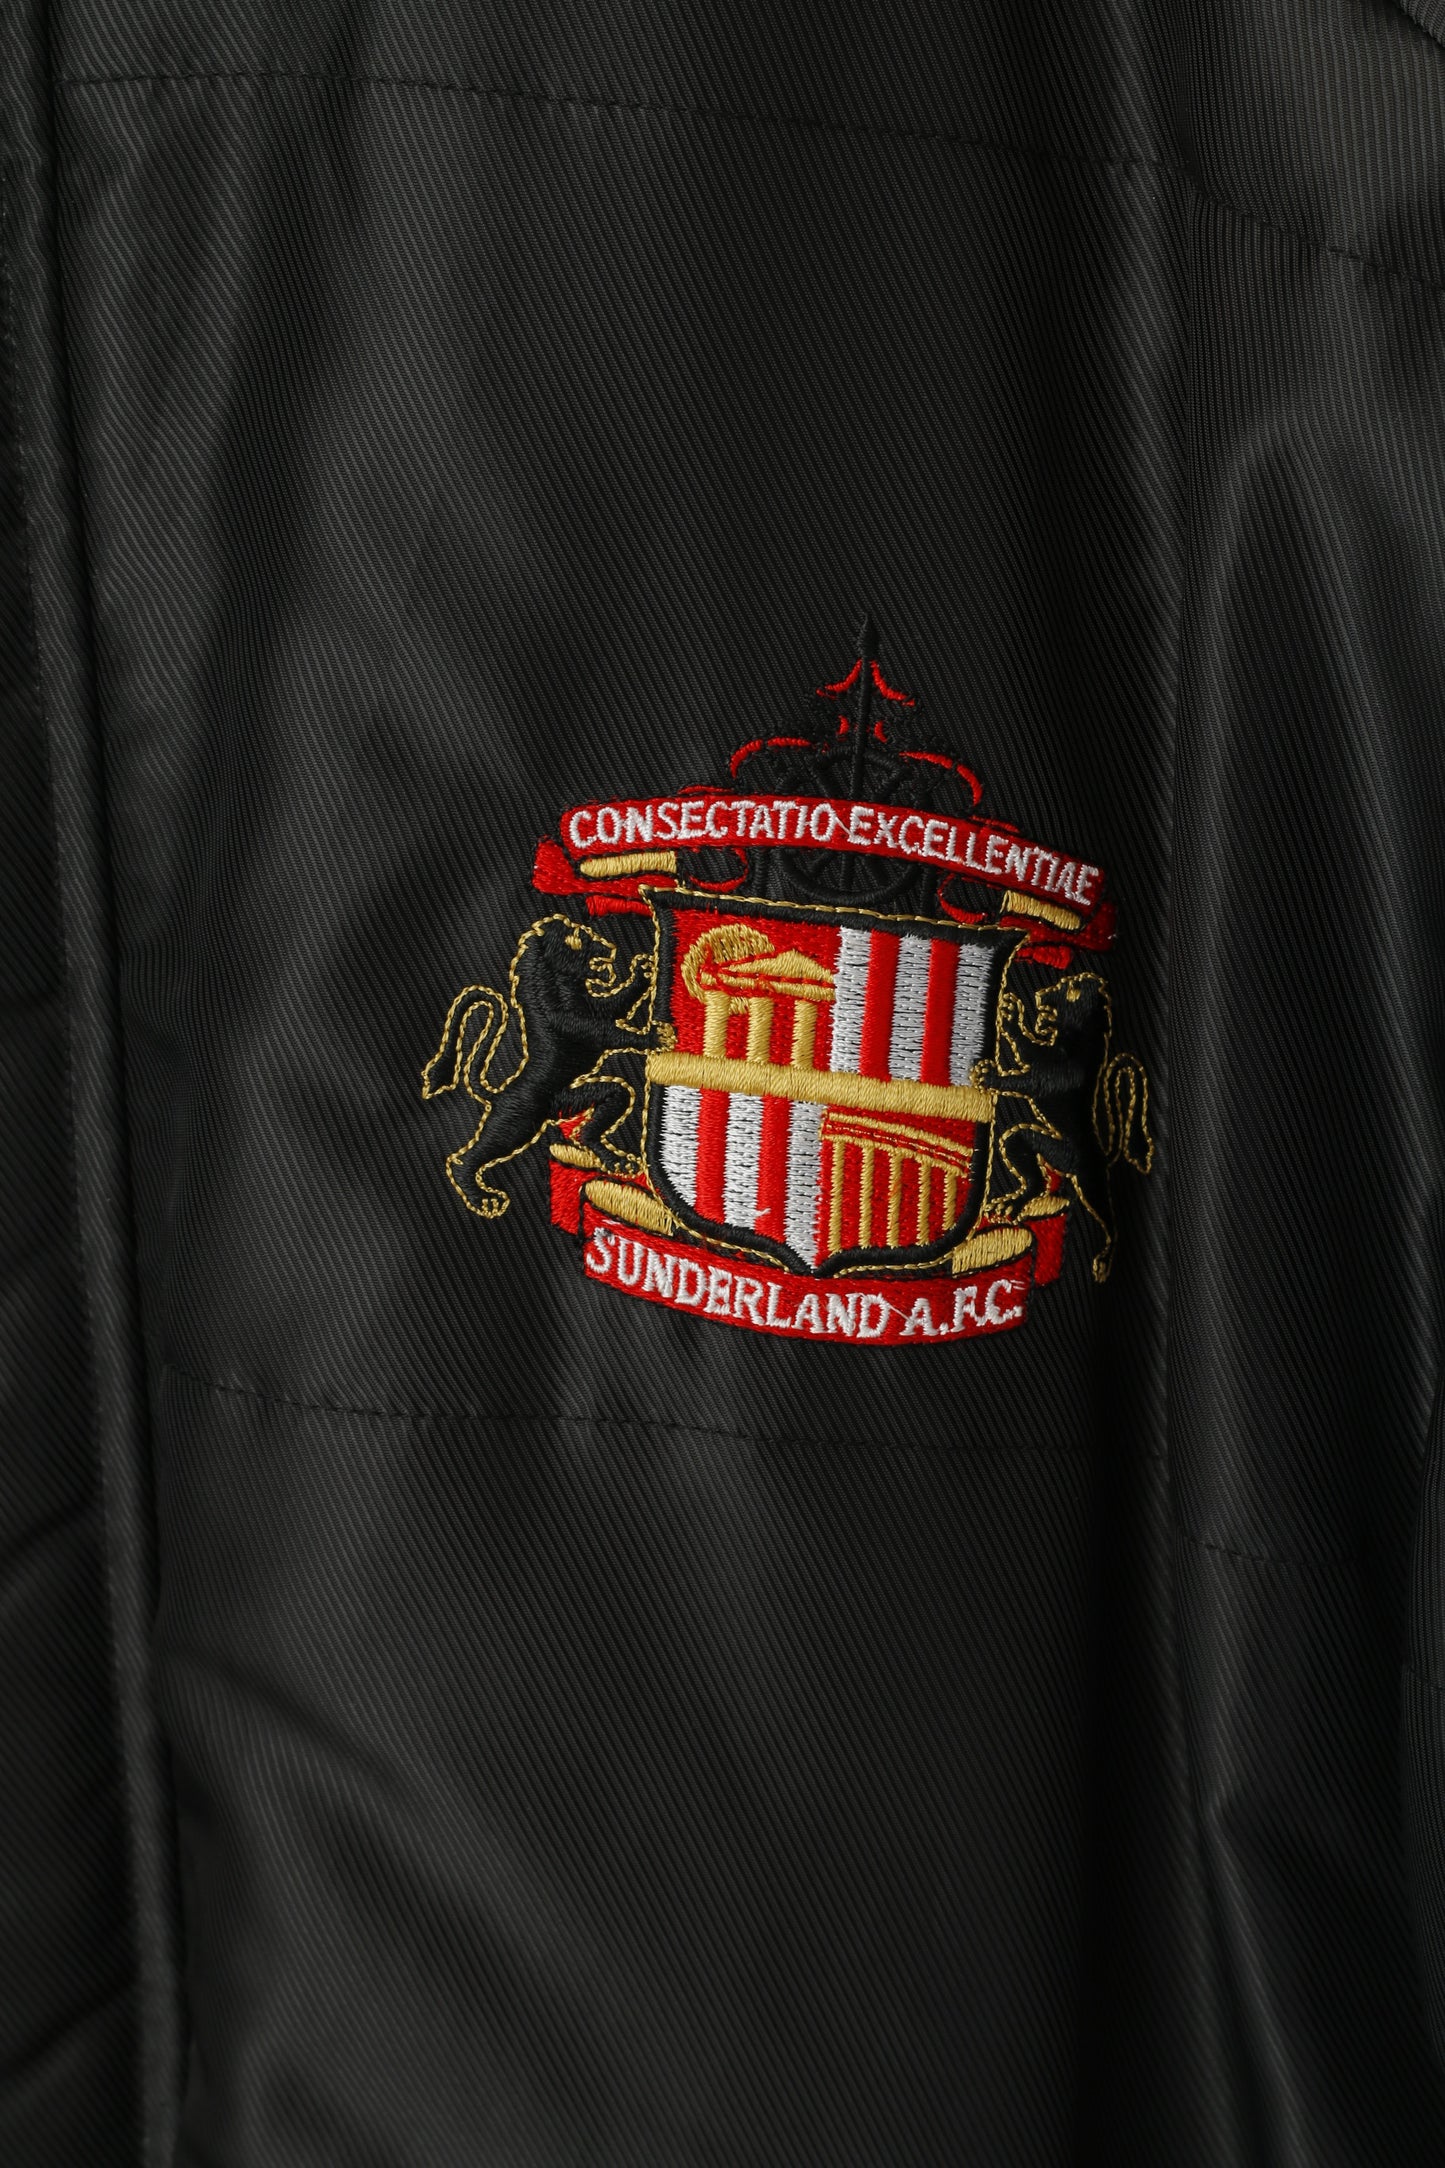 Giacca Asics Sunderland AFC da uomo M, top da calcio impermeabile in nylon imbottito nero